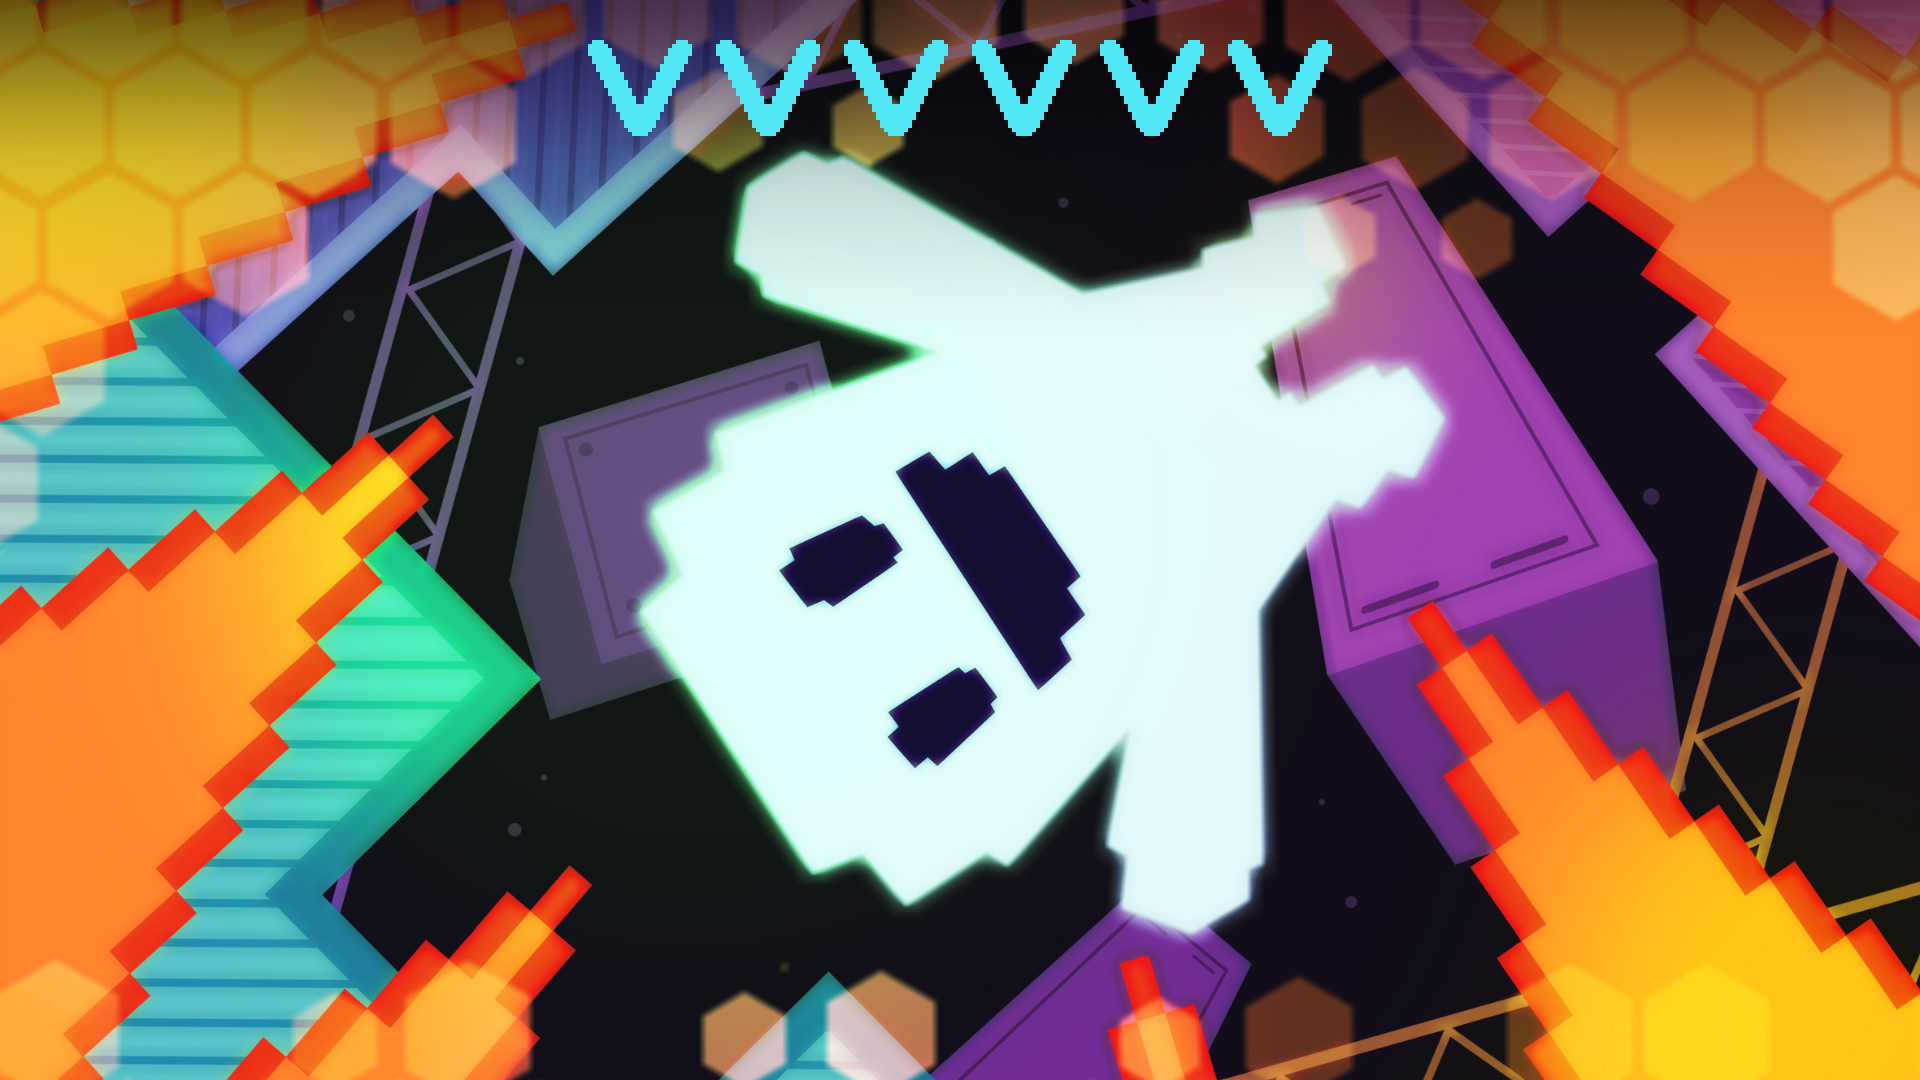 VVVVVV | | 任天堂